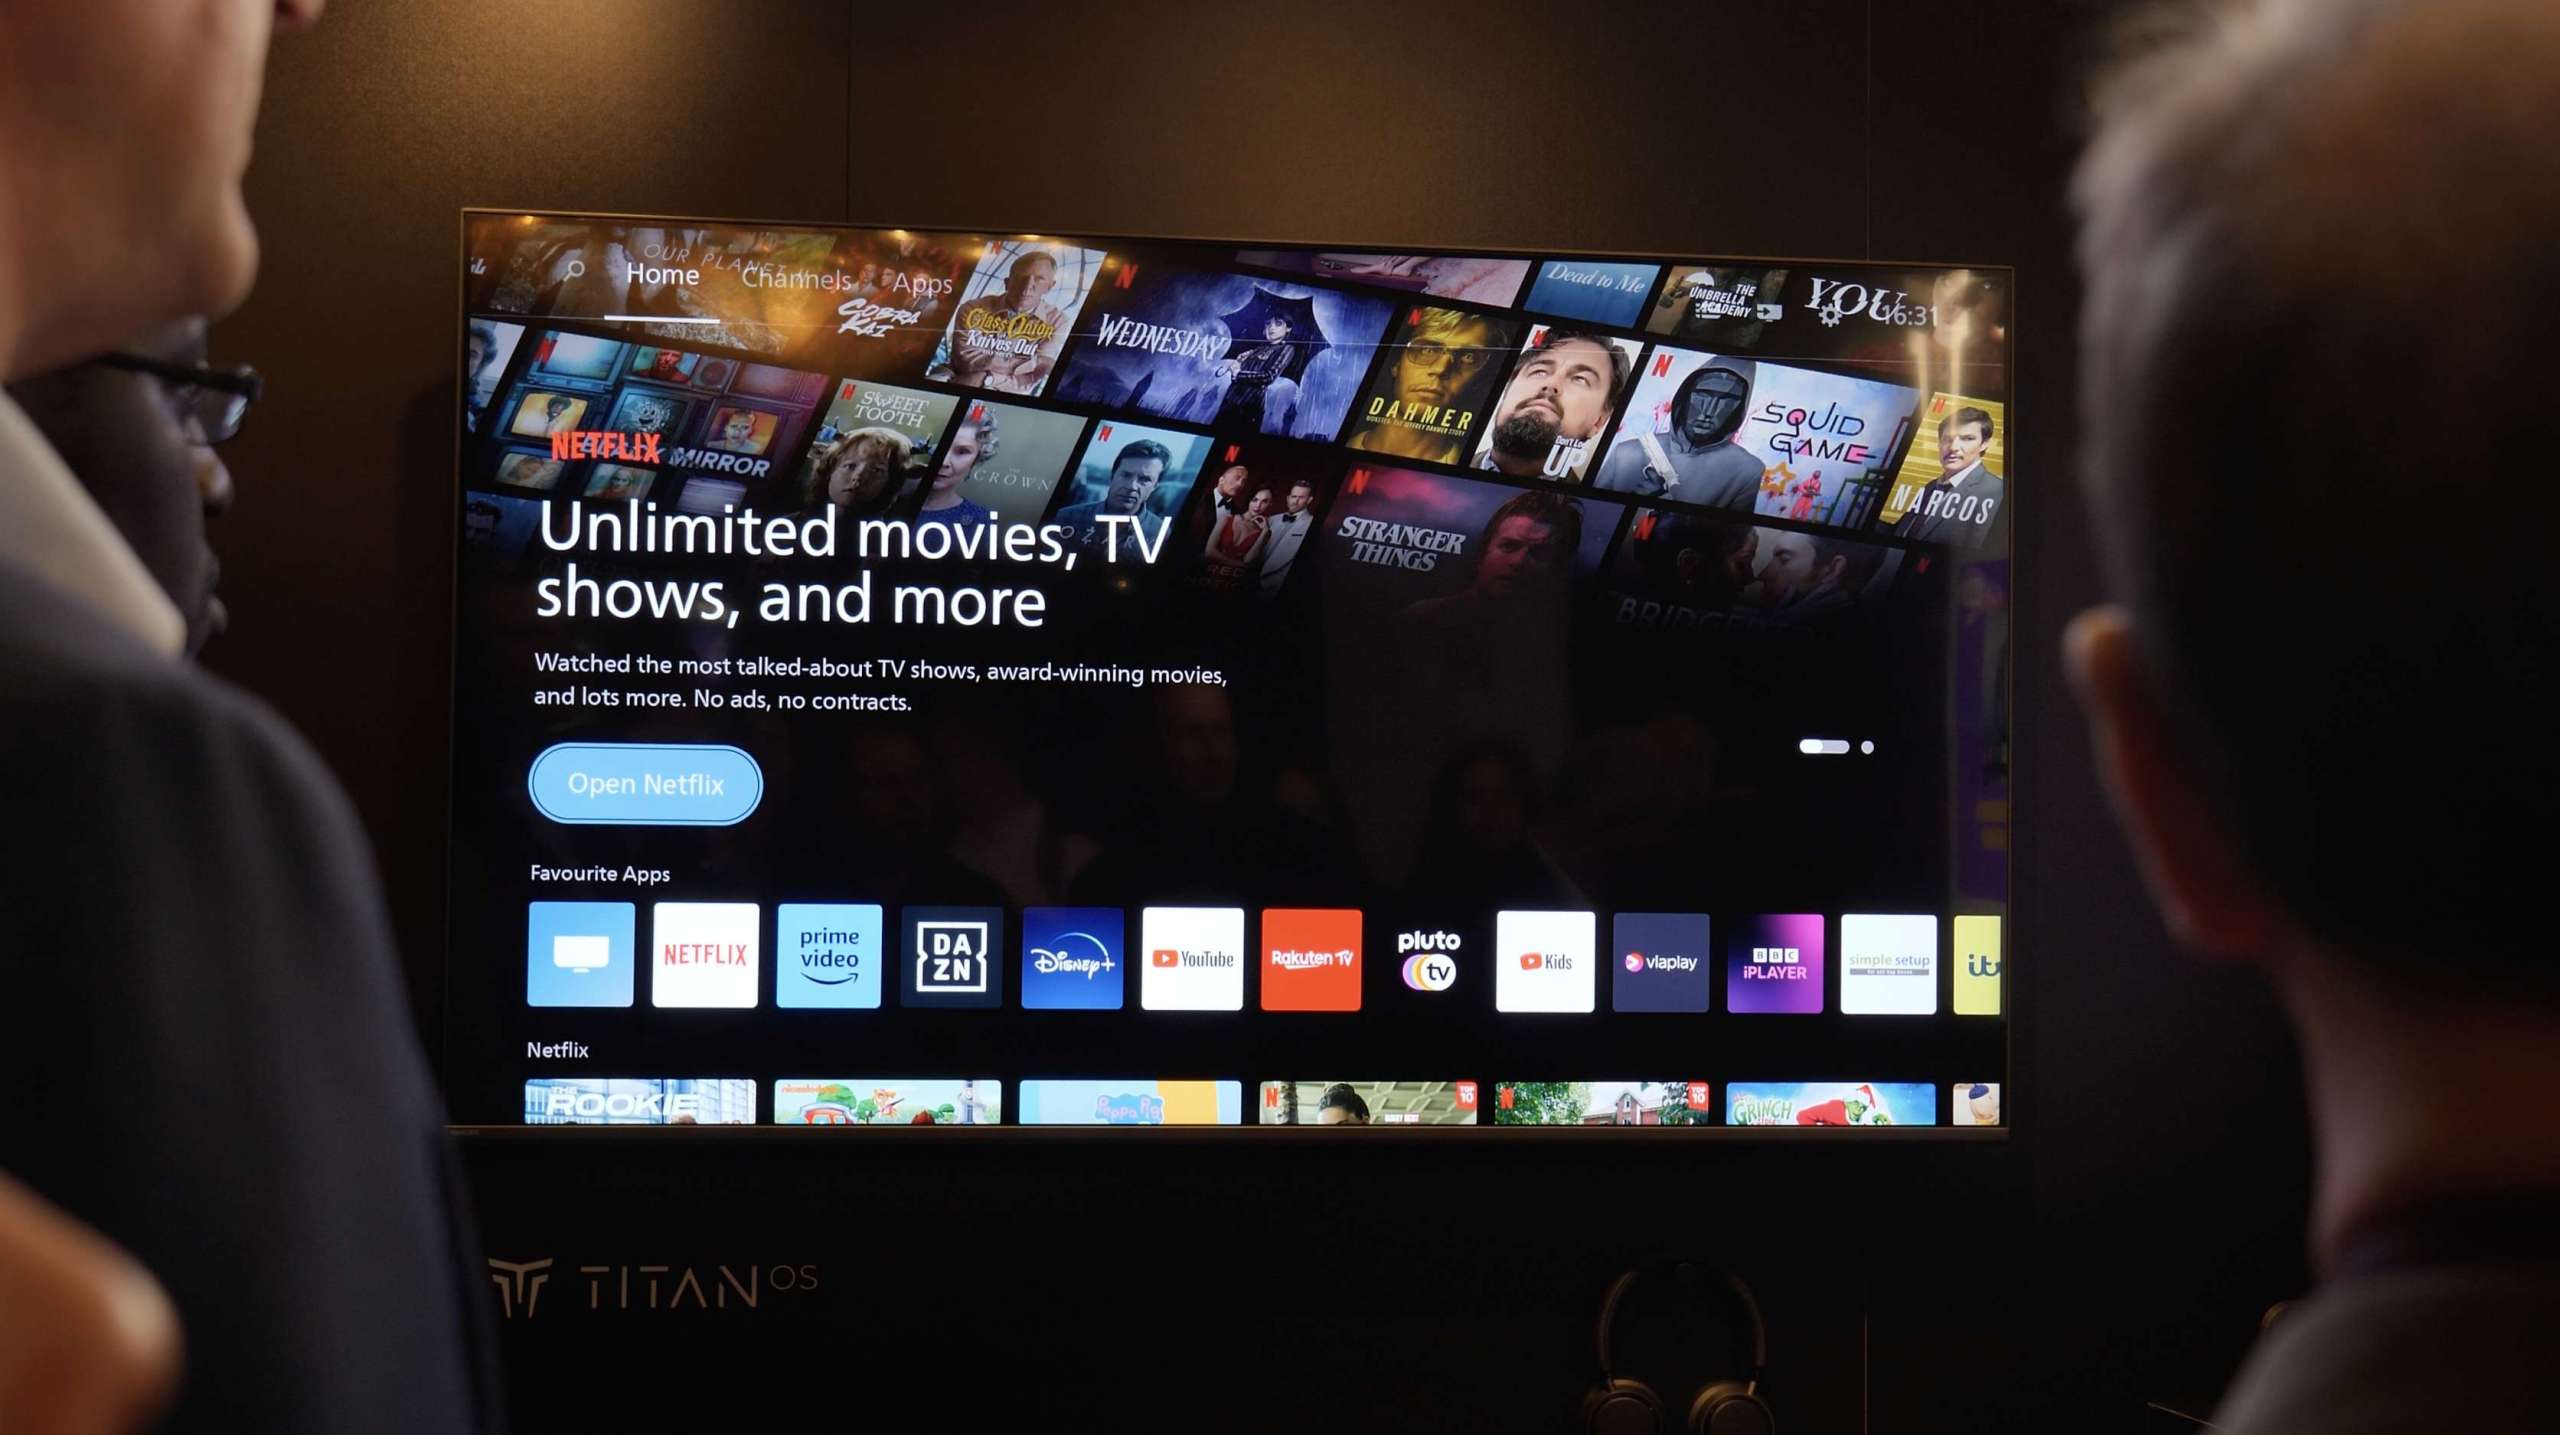 Tak wygląda Titan OS – nowy system Smart TV dla telewizorów Philips! Na które modele trafi?